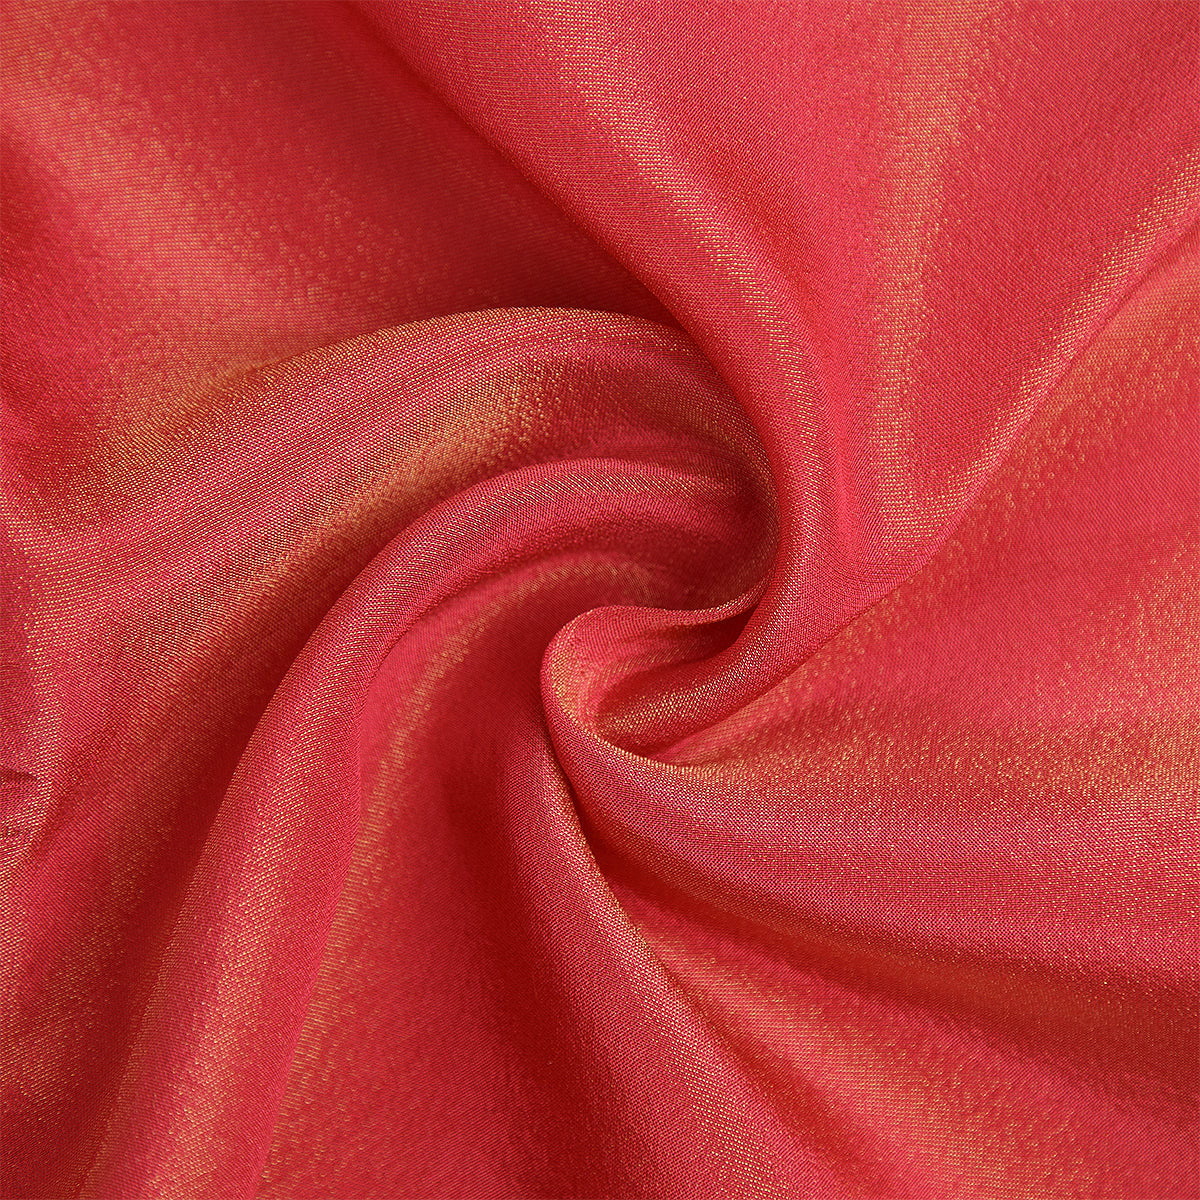 Pure Zari Tissue Grip Zari Jacquard-FGDS0001823 - Tasneem Fabrics